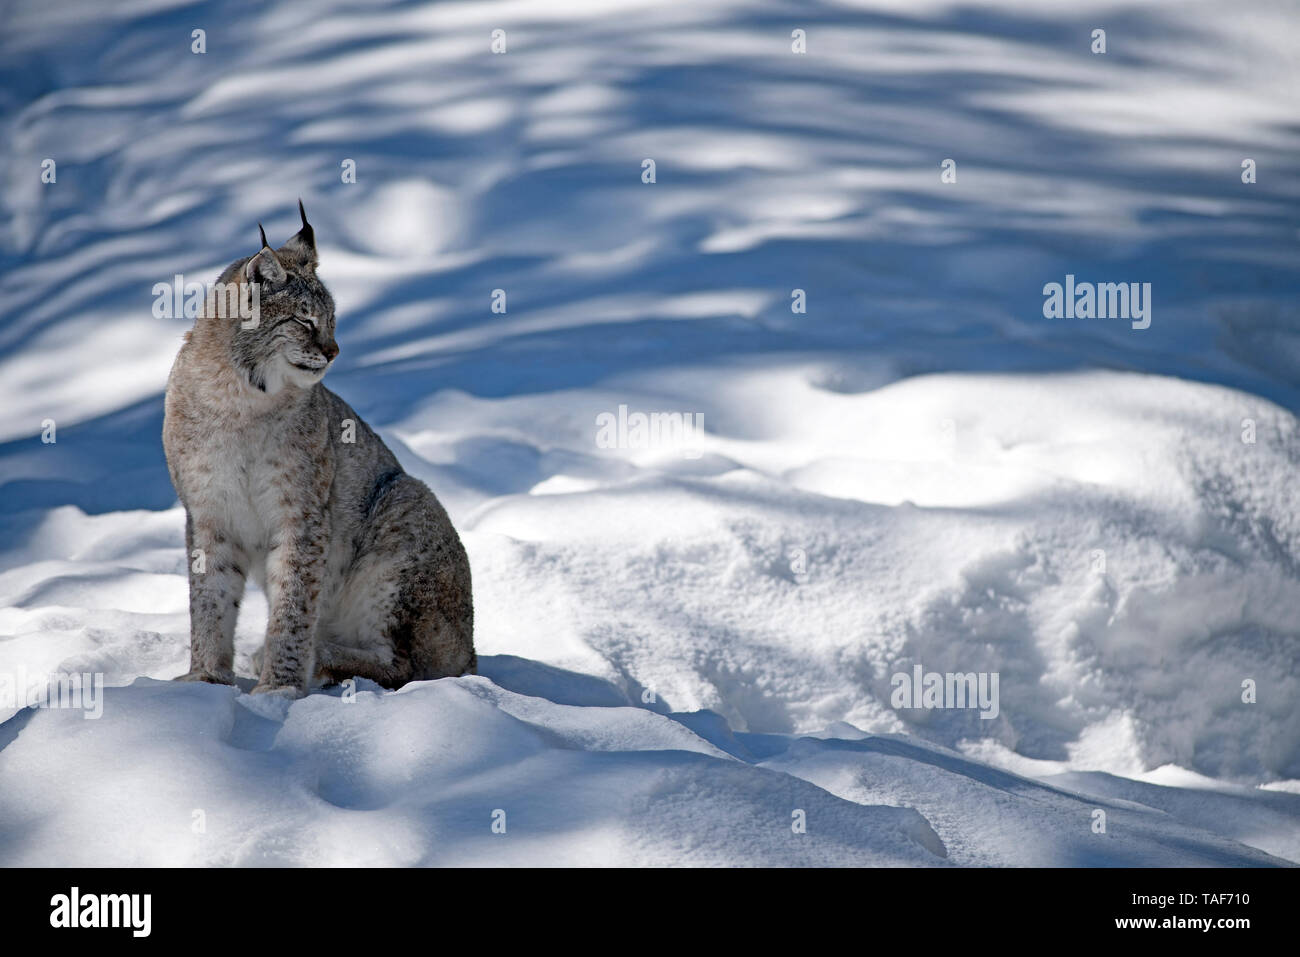 Eurasian lynx (Lynx lynx) in the snow Stock Photo - Alamy